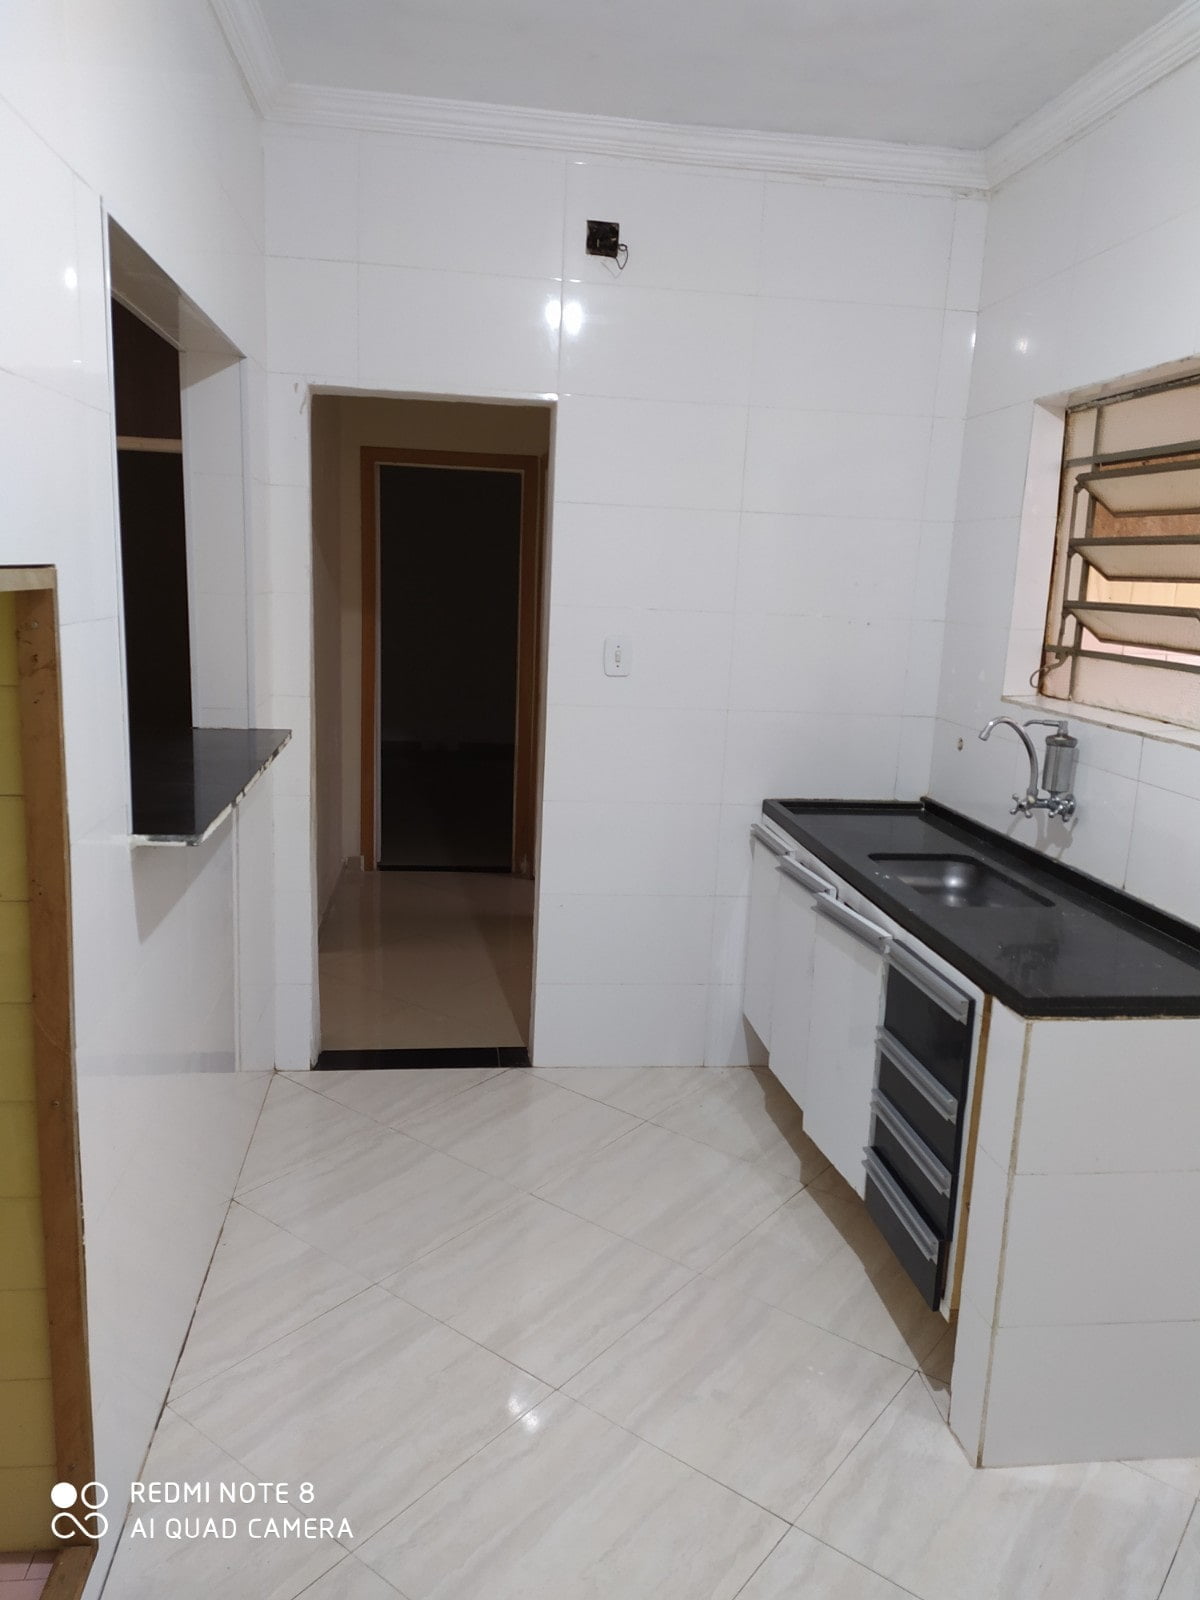 Vendo bom apartamento térreo com 2 dormitórios a 3 quadras da praia no Embaré. - foto 9